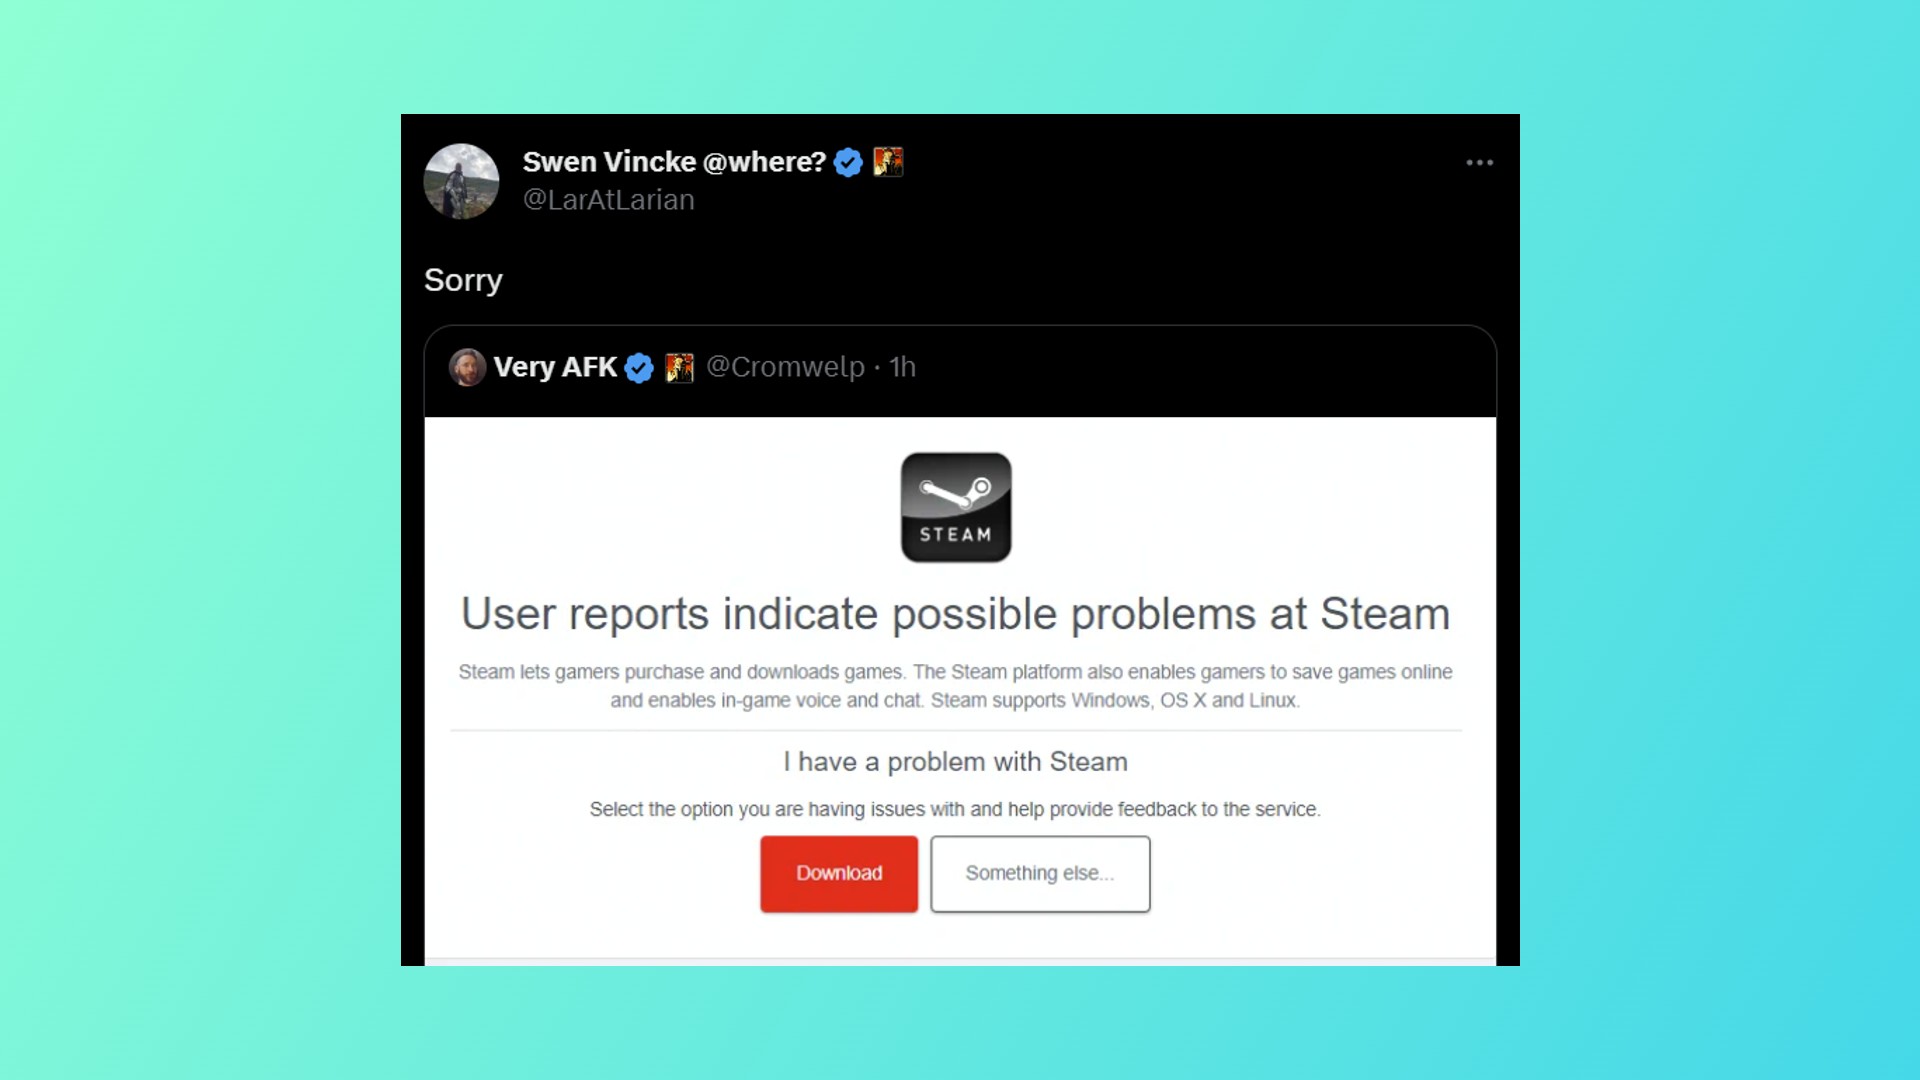 Baldur's Gate 3 Steam crash: A tweet from a Baldur's Gate 3 dev in response to Steam issues